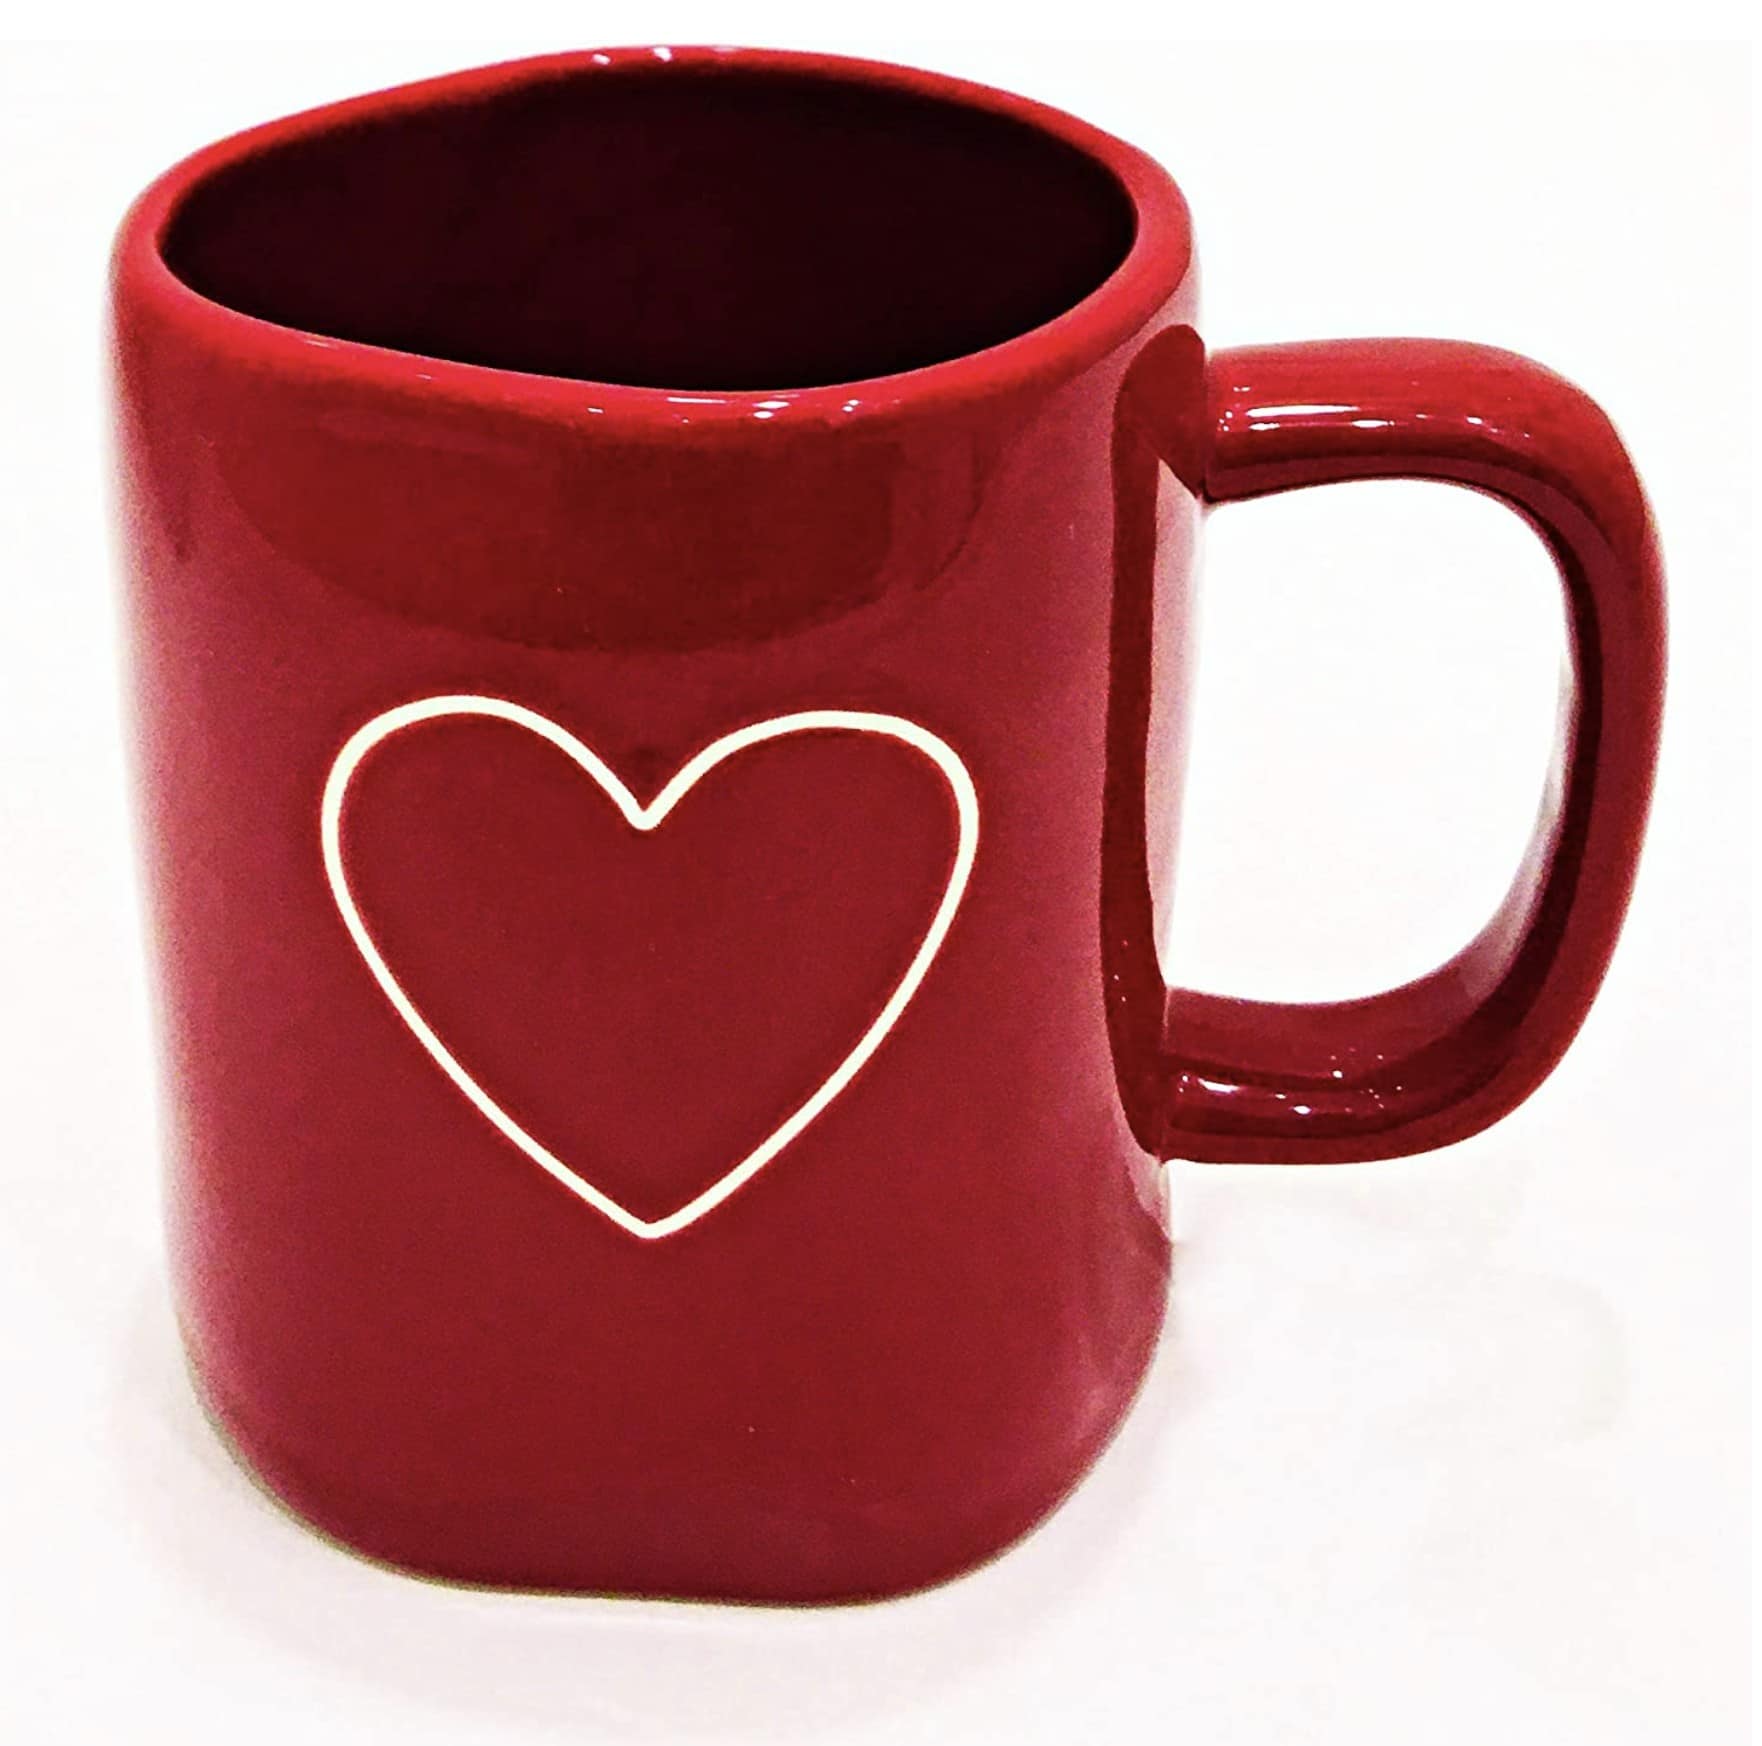 Valemtine's Day Red Mug